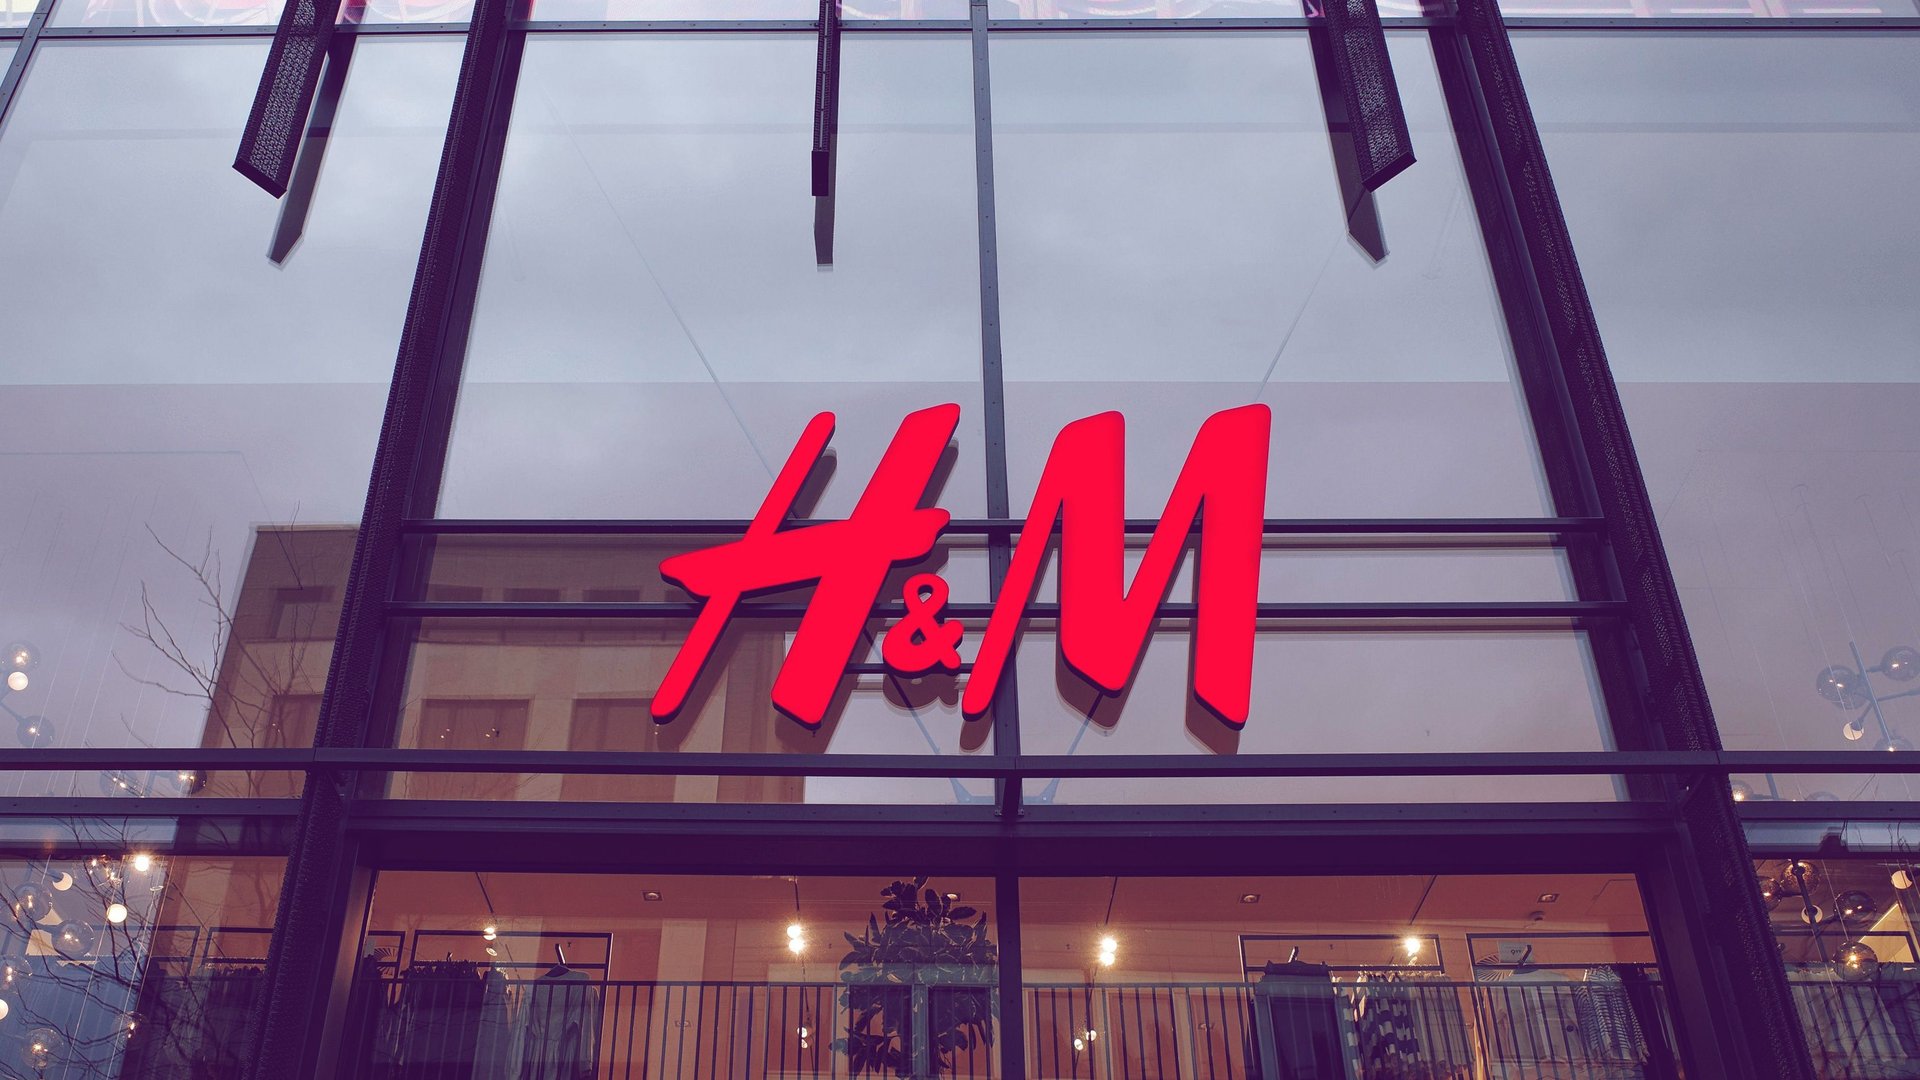 Perfekt für den Frühling: Diese stylischen Übergangsjacken von H&M ...